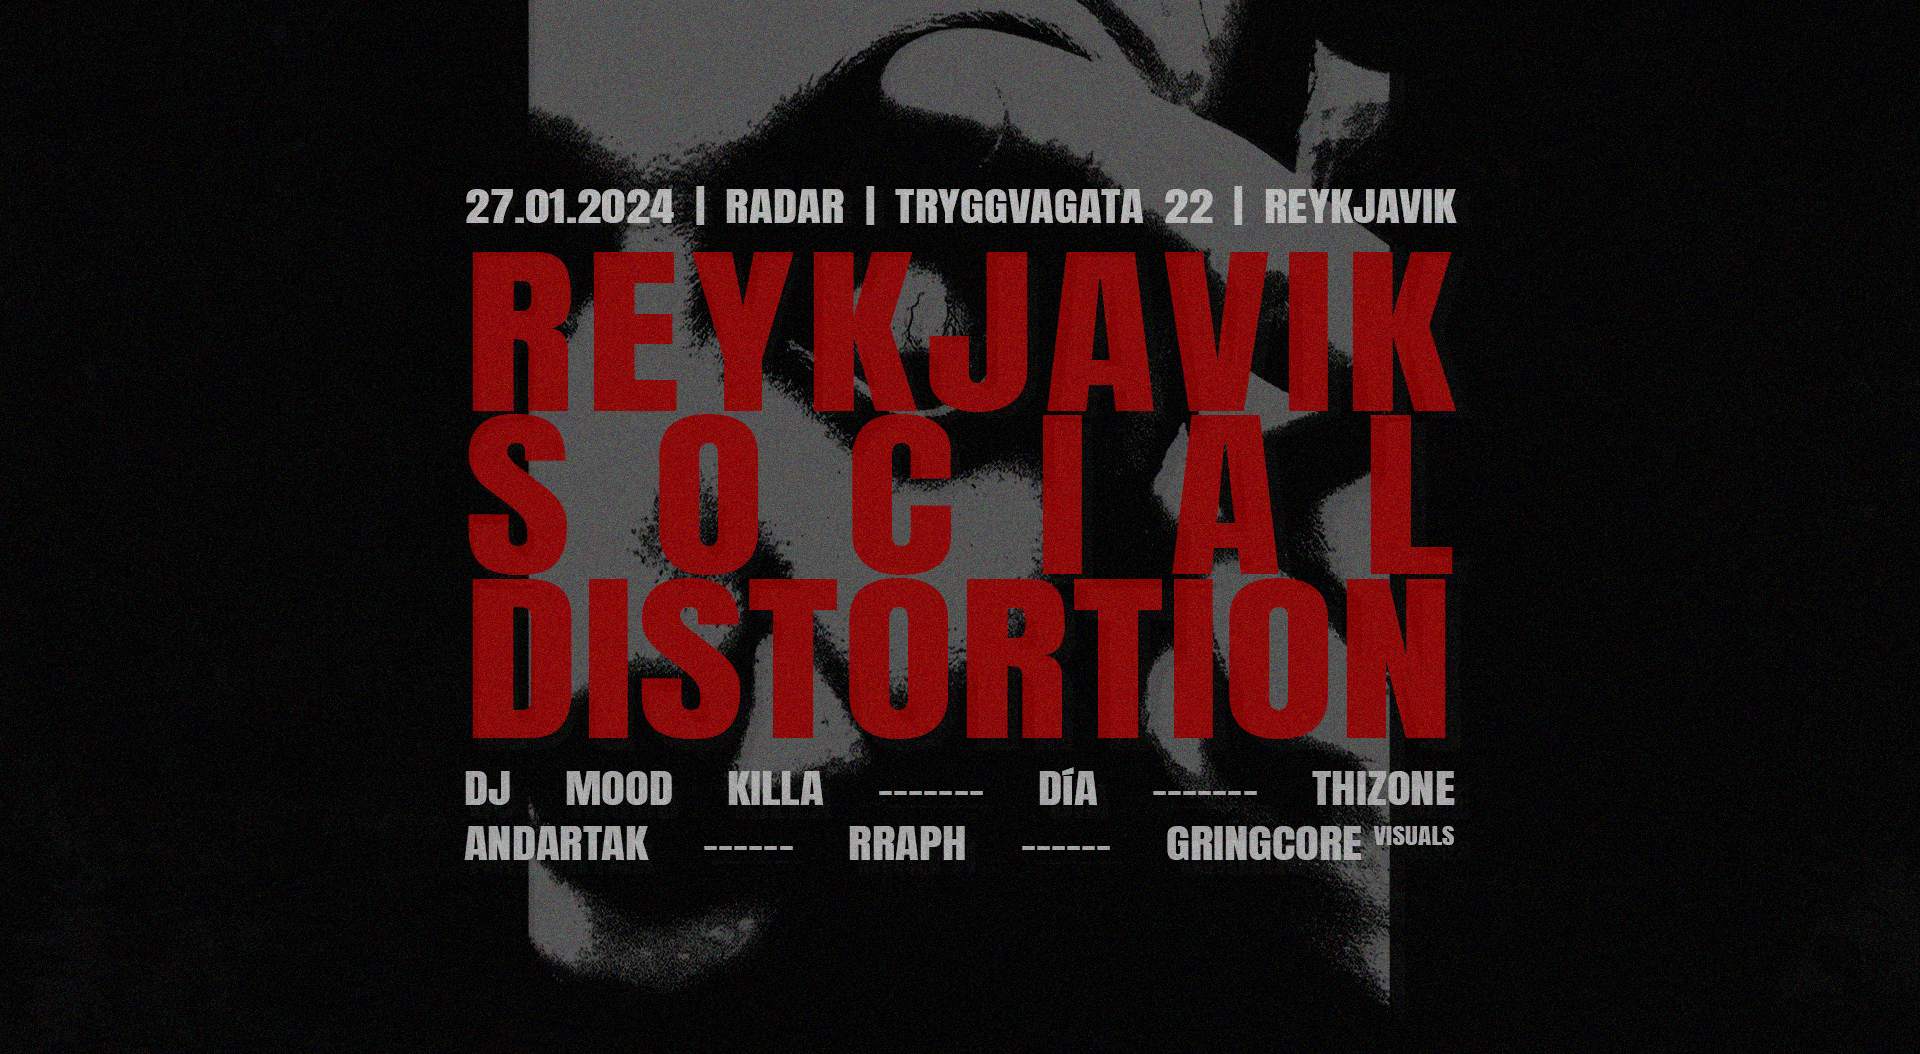 Reykjavík Social Distortion - フライヤー表